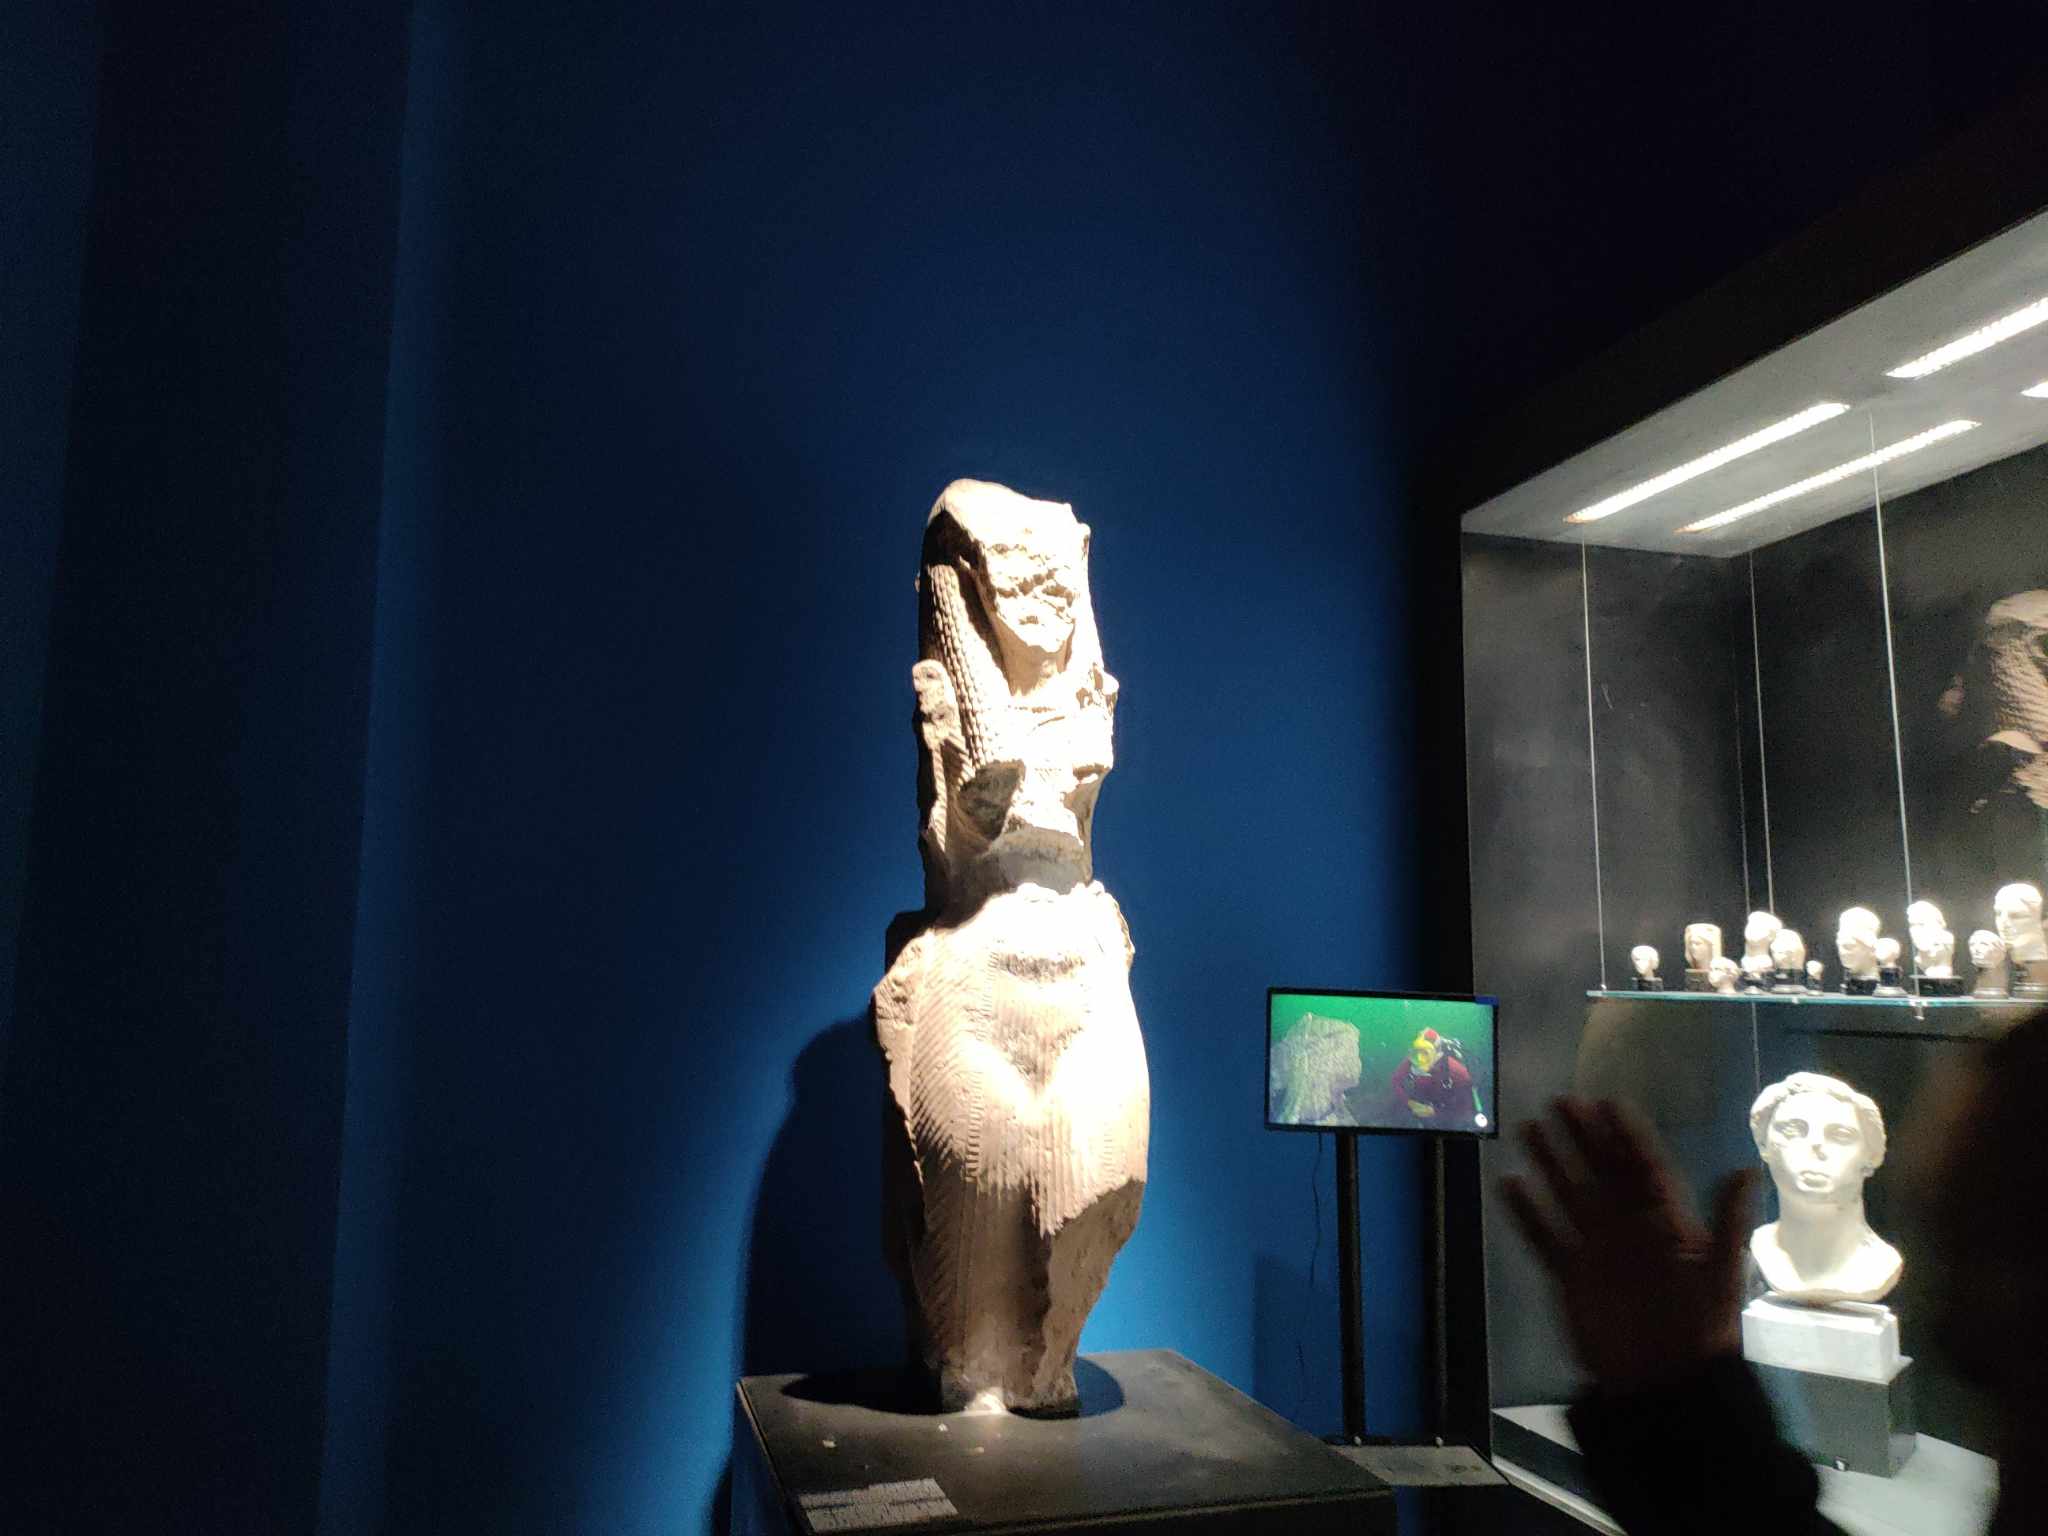 قطع أثرية من المعروضة داخل المتحف اليوناني الروماني